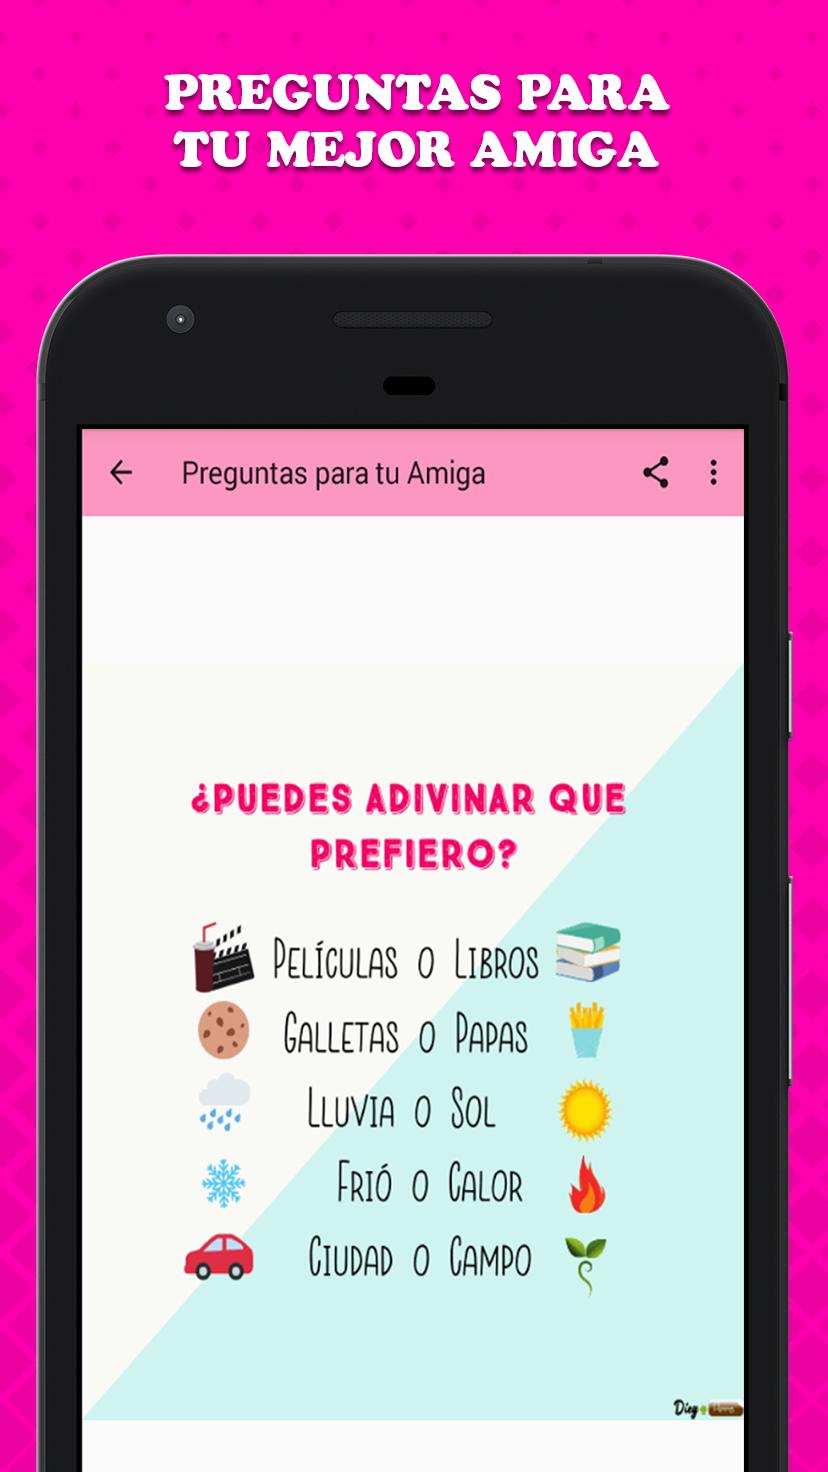 Imagenes De Amigas Con Frases For Android Apk Download